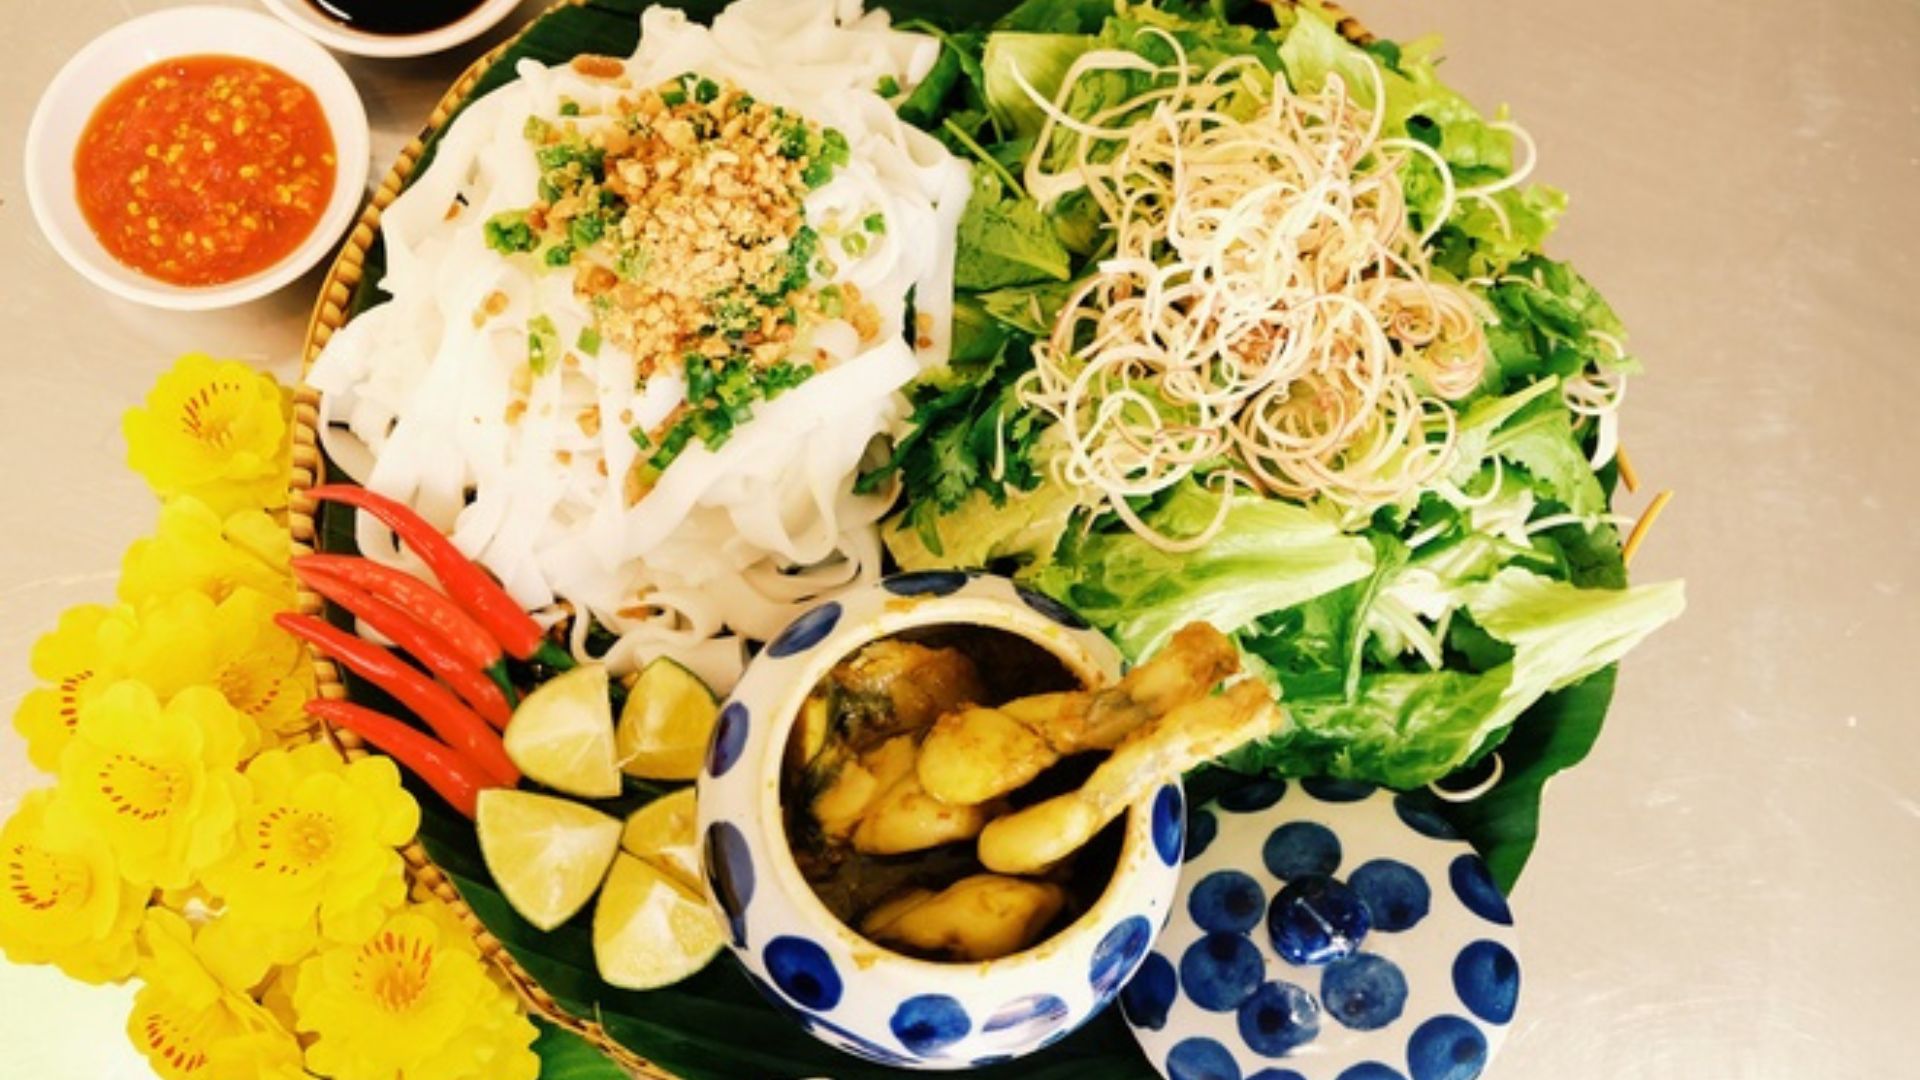 Mì quảng ếch Bếp Trang - Nhà hàng đặc sản nổi tiếng Đà Nẵng